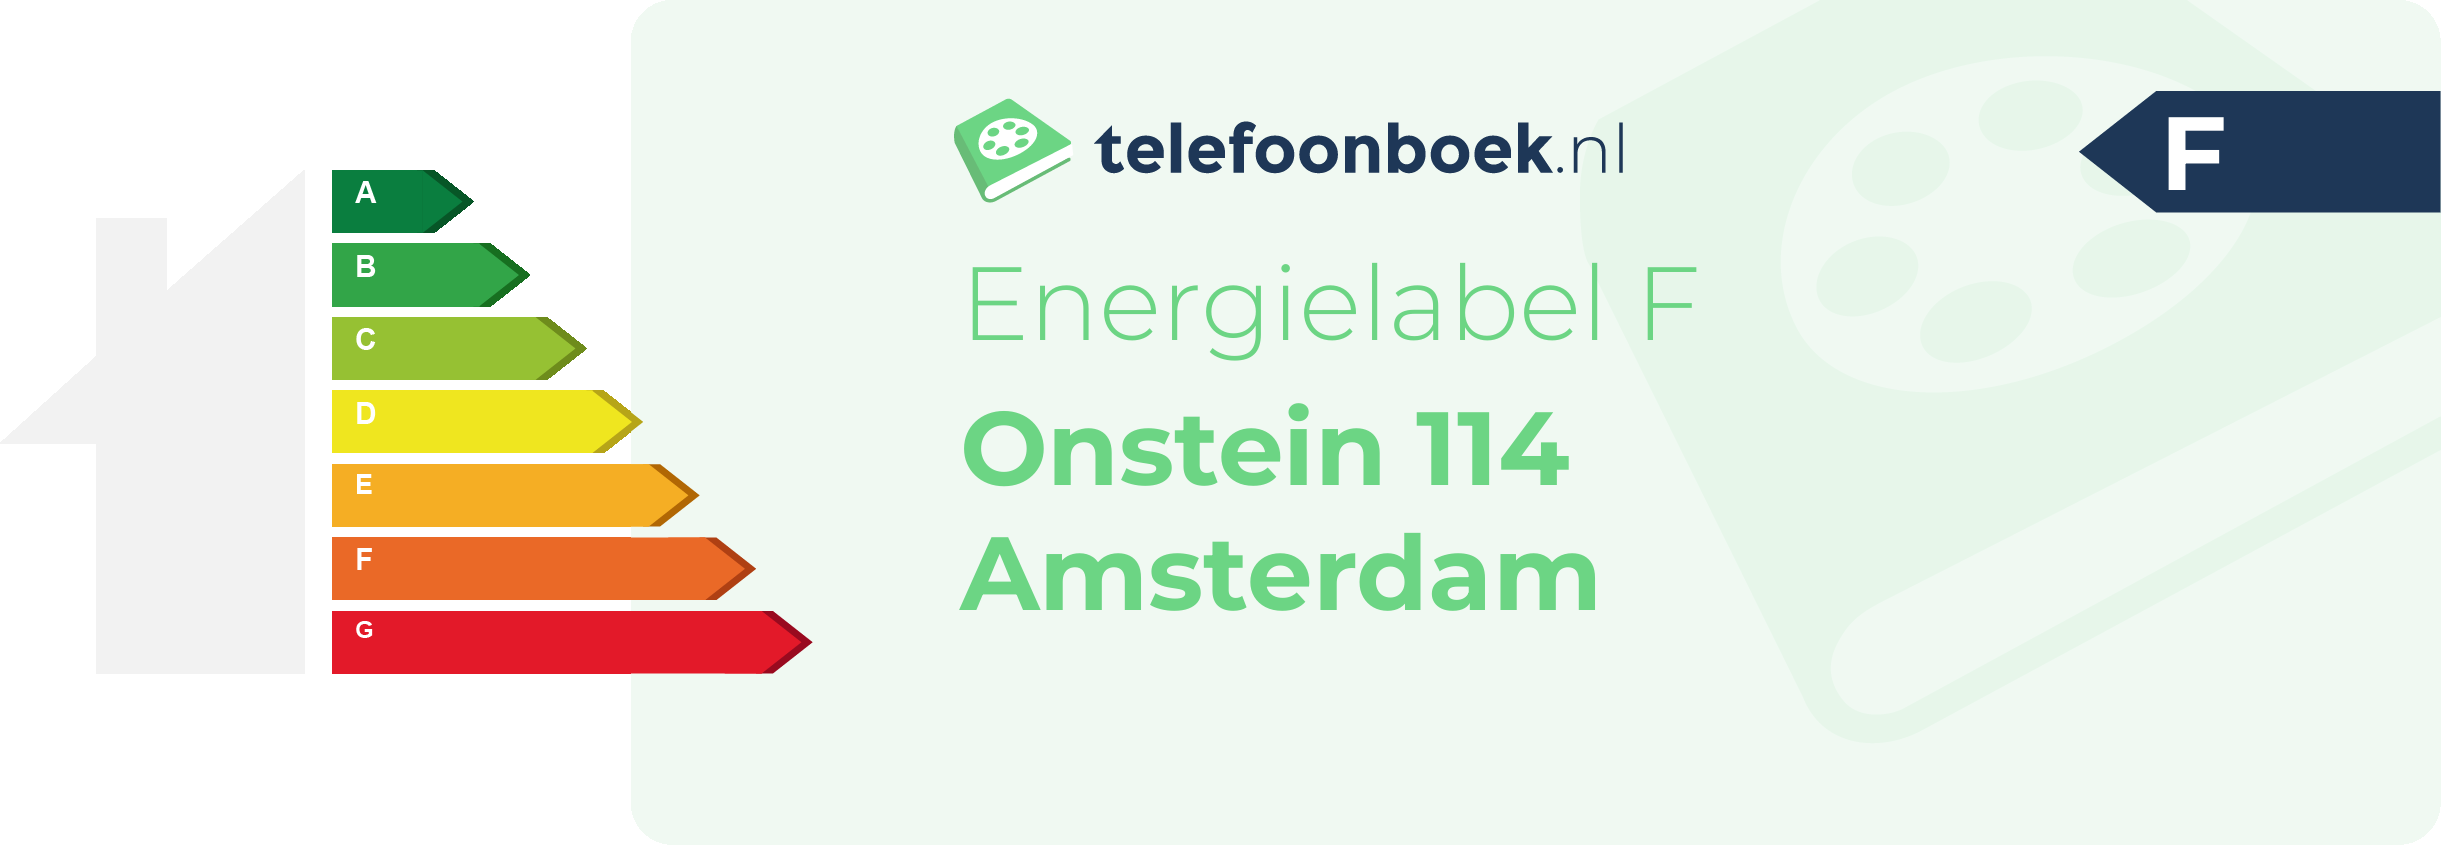 Energielabel Onstein 114 Amsterdam